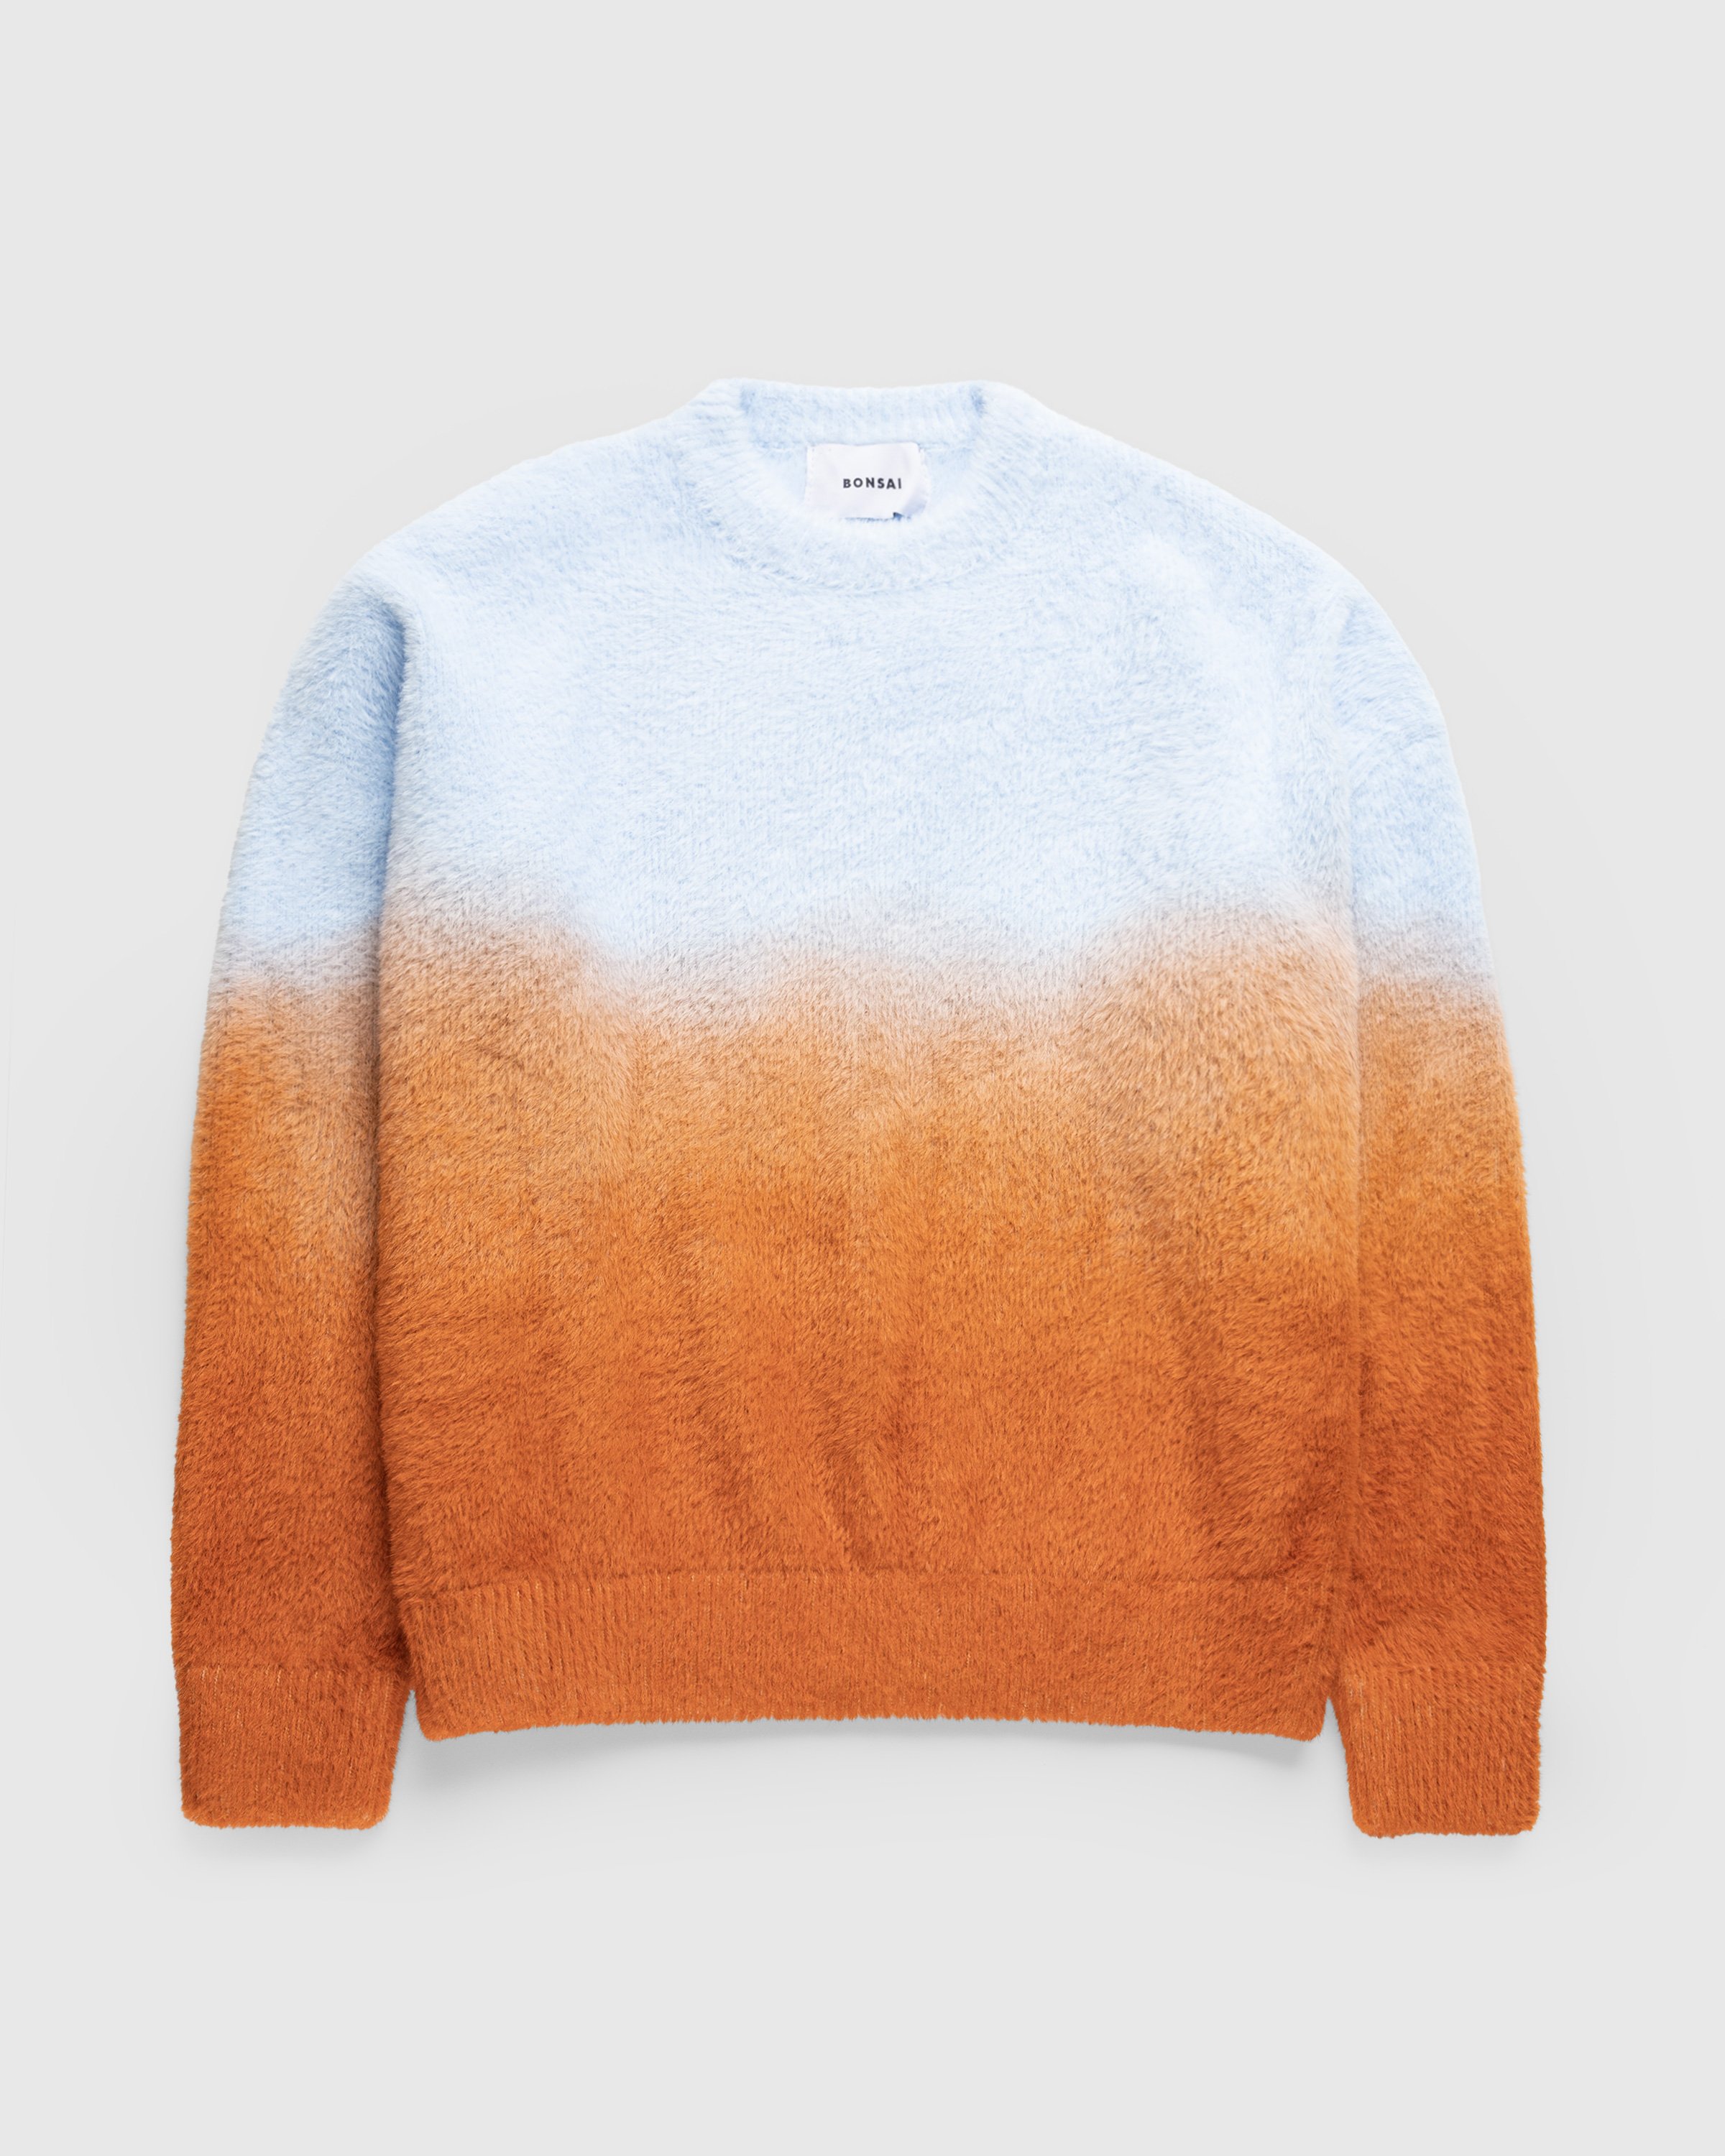 Bonsai - Degrade Knit Crewneck Sweater Sunset - Clothing - Orange - Image 1